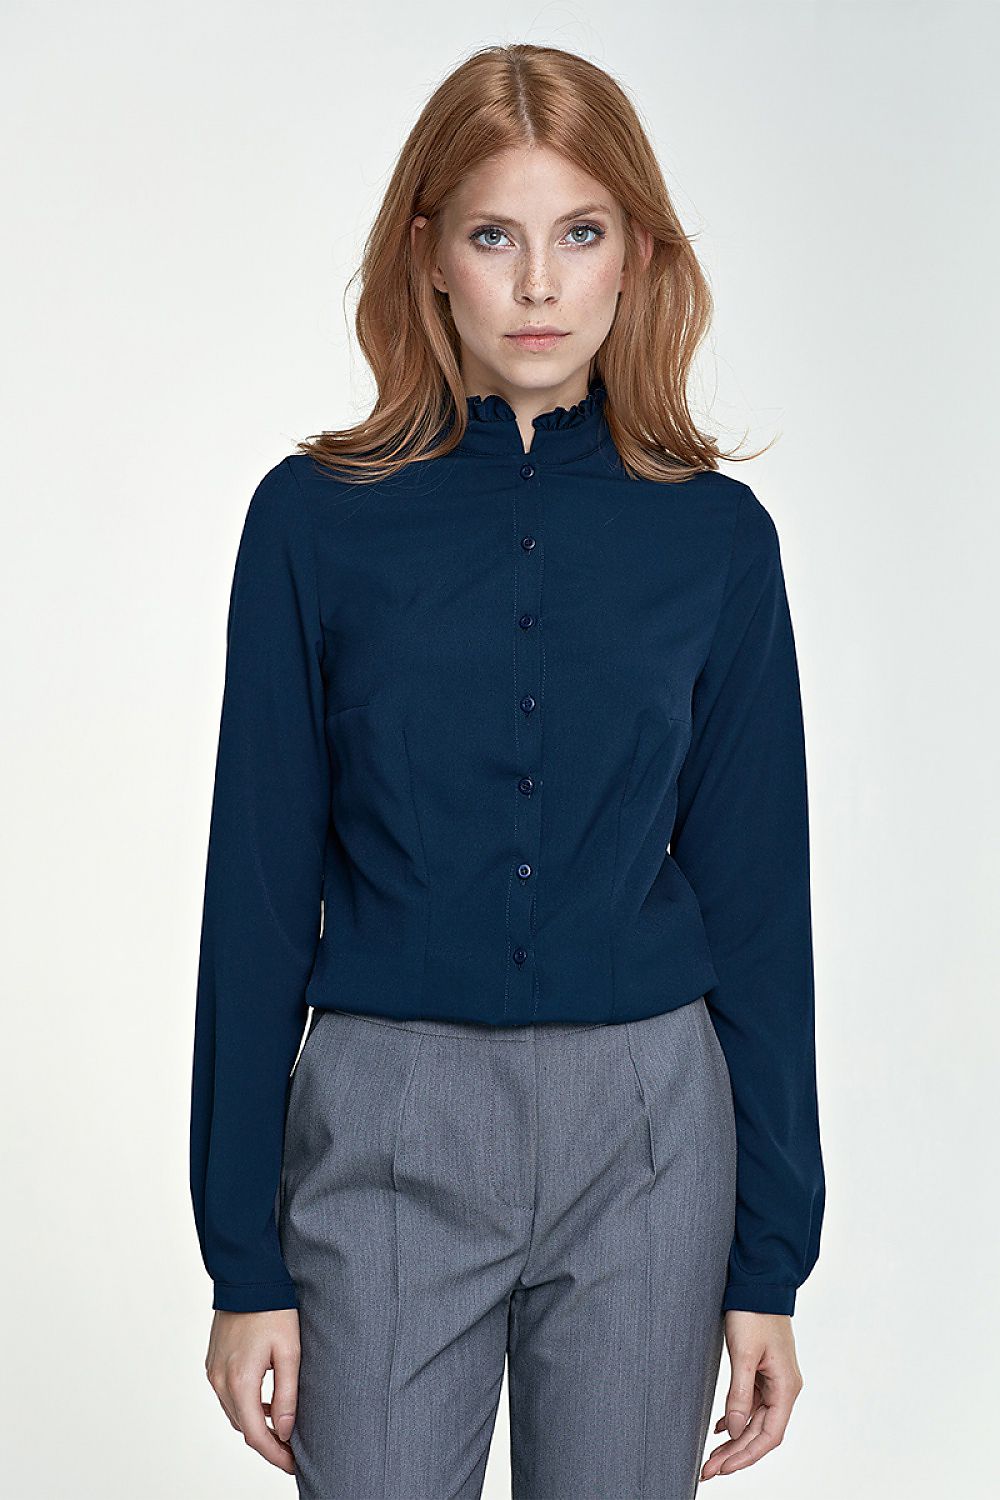 Elegant shirt model 66173 Nife Shirts for Women Wholesale Clothing ...